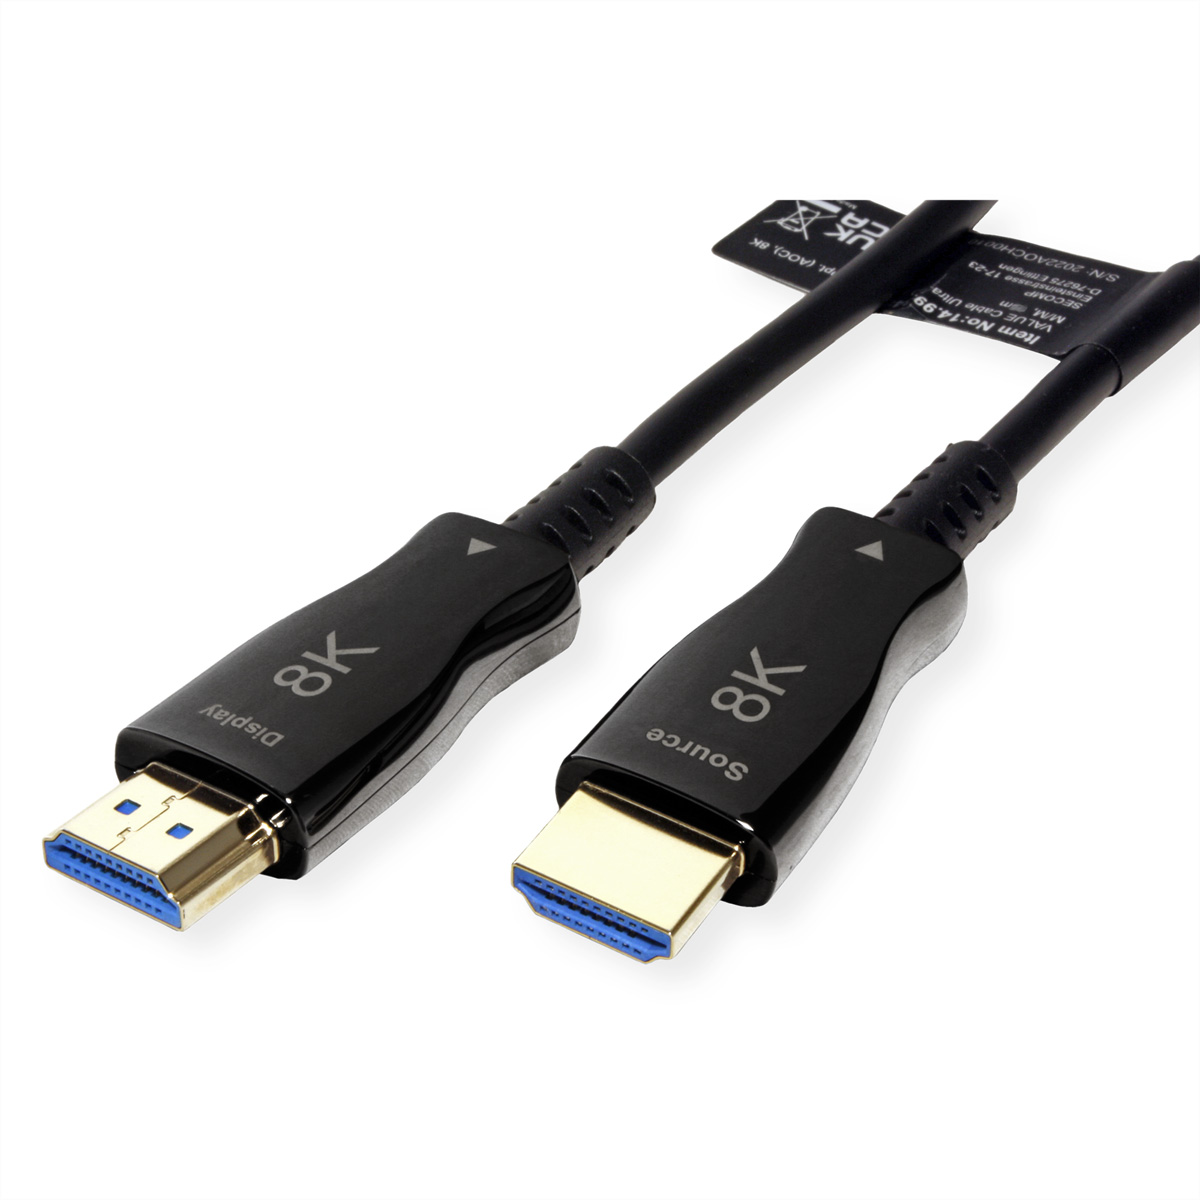 VALUE Ultra HDMI Aktiv mit Ethernet Kabel Ultra HDMI Kabel HD Optisches 8K